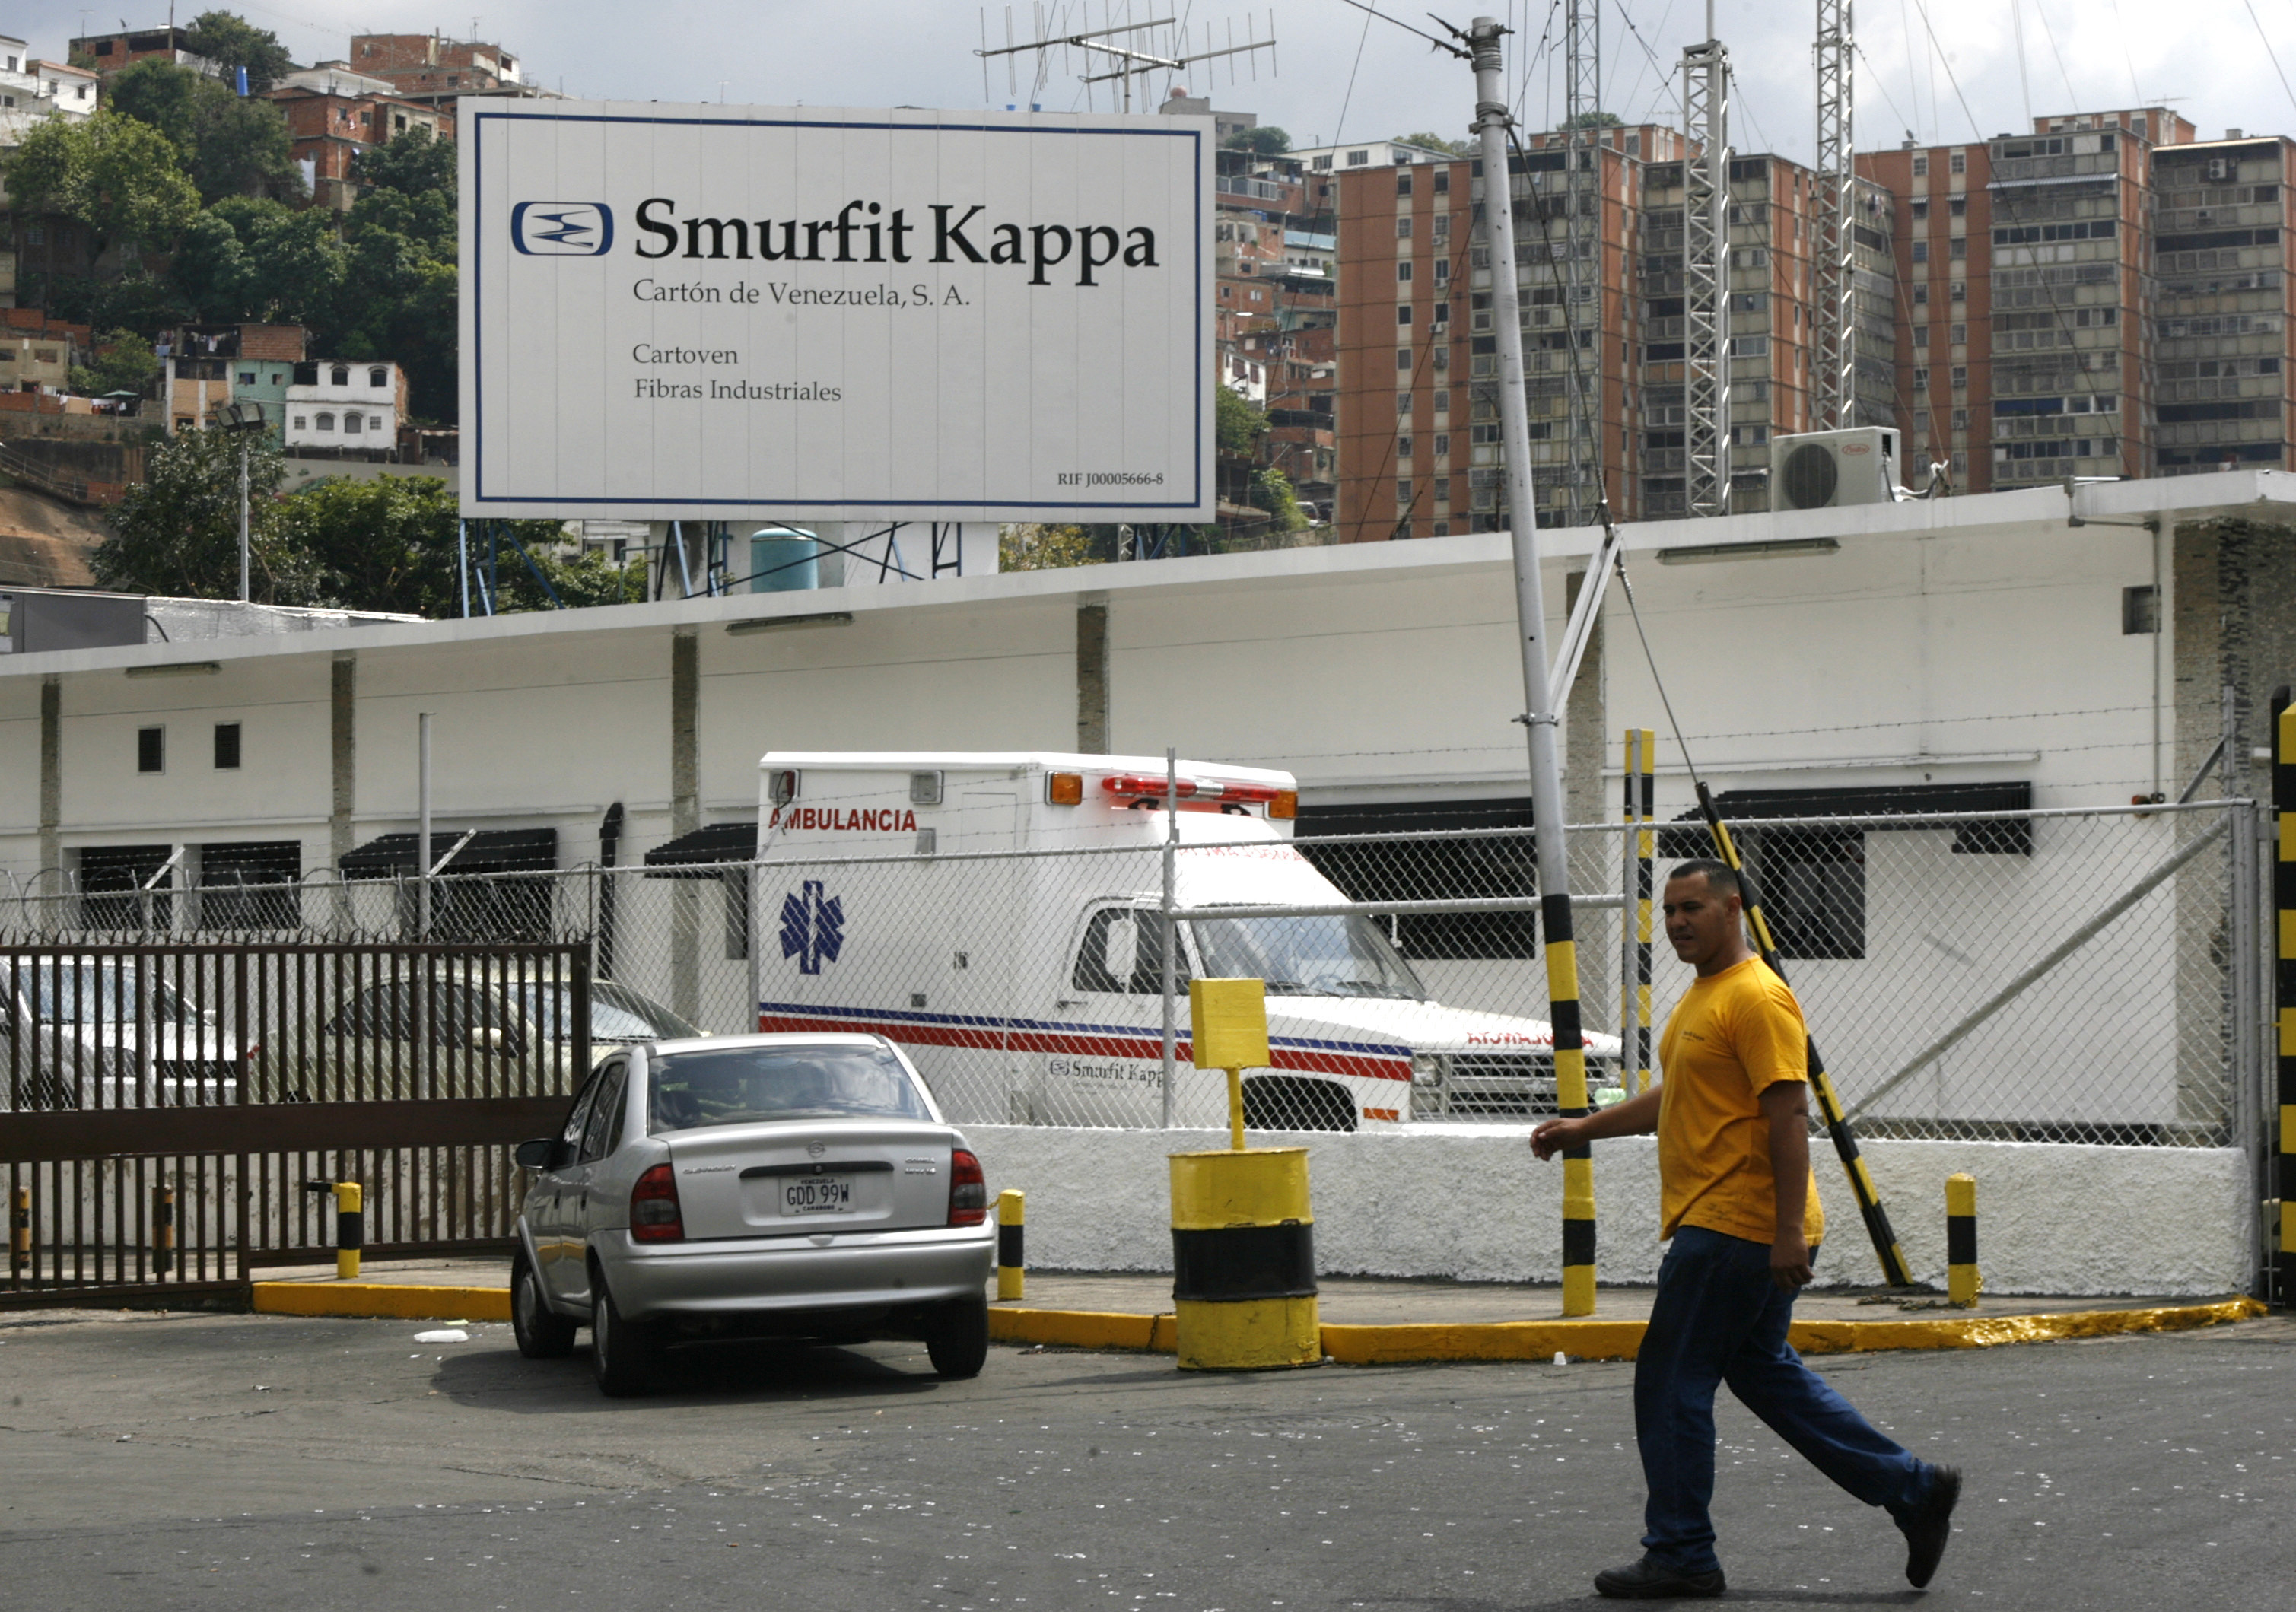 Smurfit Kappa bolivariana se compromete a reiniciar producción de cartón en “el menor tiempo posible”